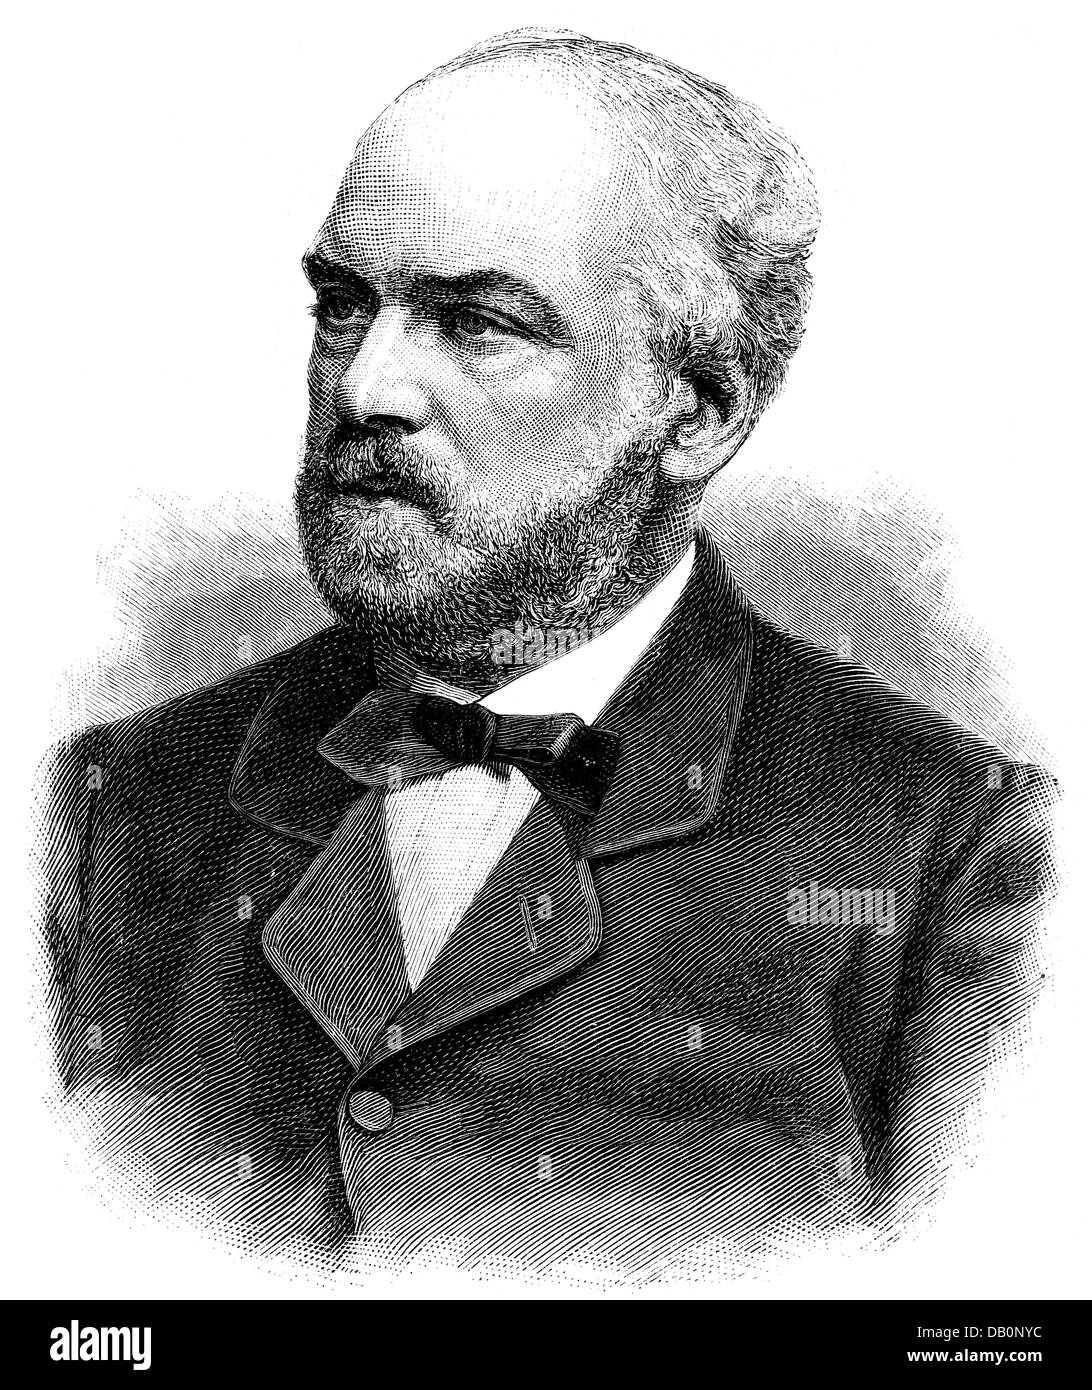 Launay, Luigi Maria Eduardo de, 1820 - 1892, diplomatico italiano, ambasciatore in Germania 1875 - 1892, ritratto, incisione in legno, 1884, Foto Stock